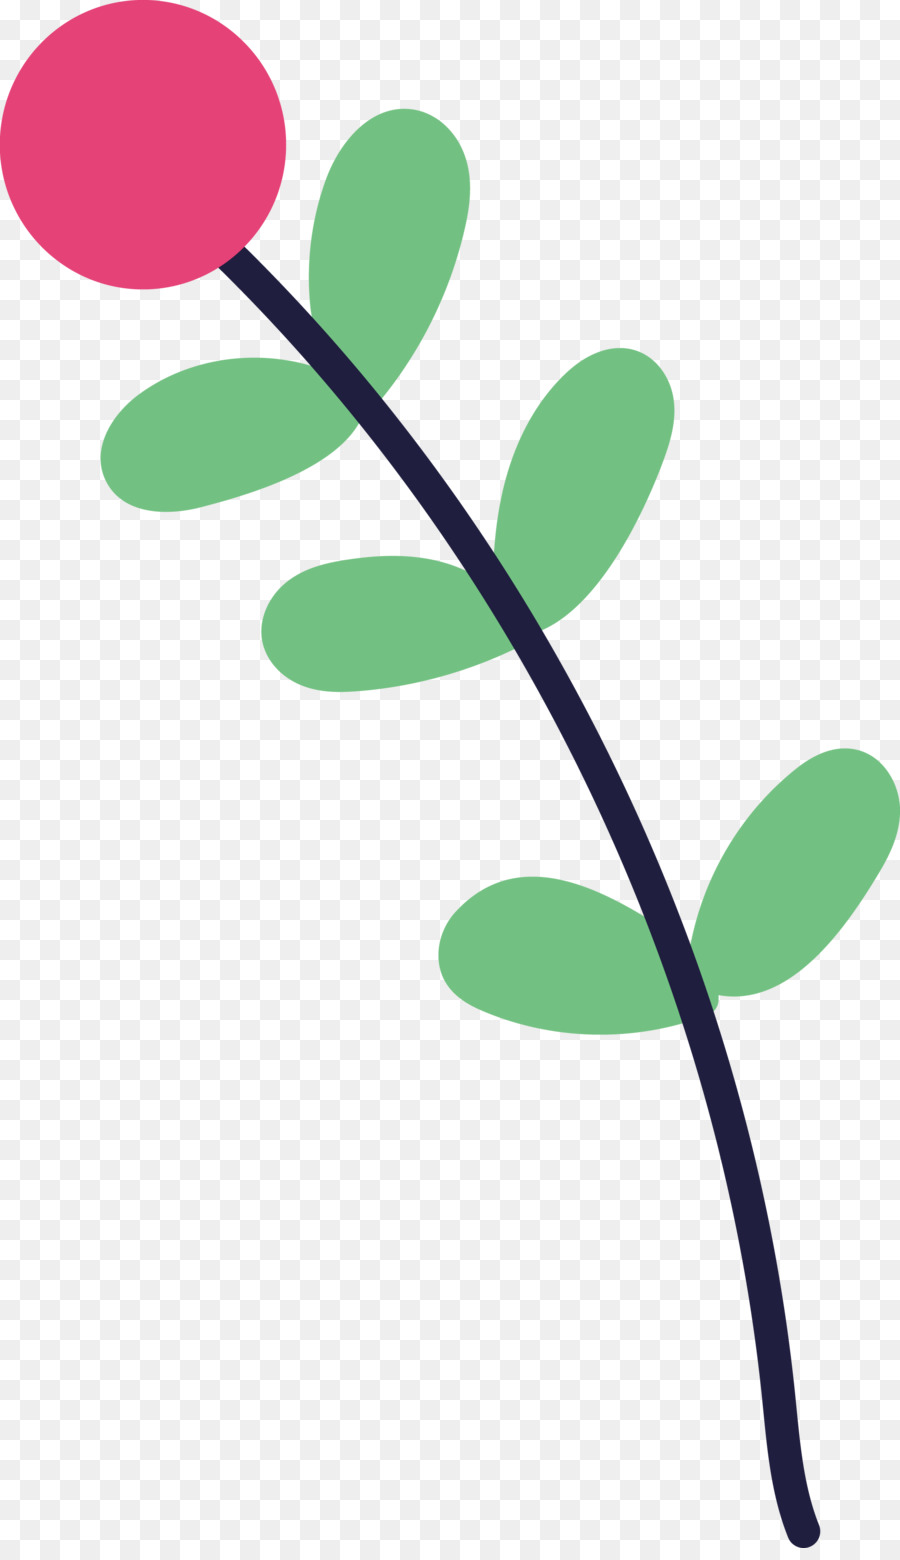 Blattpflanzenstammzweig grüne Blume - 